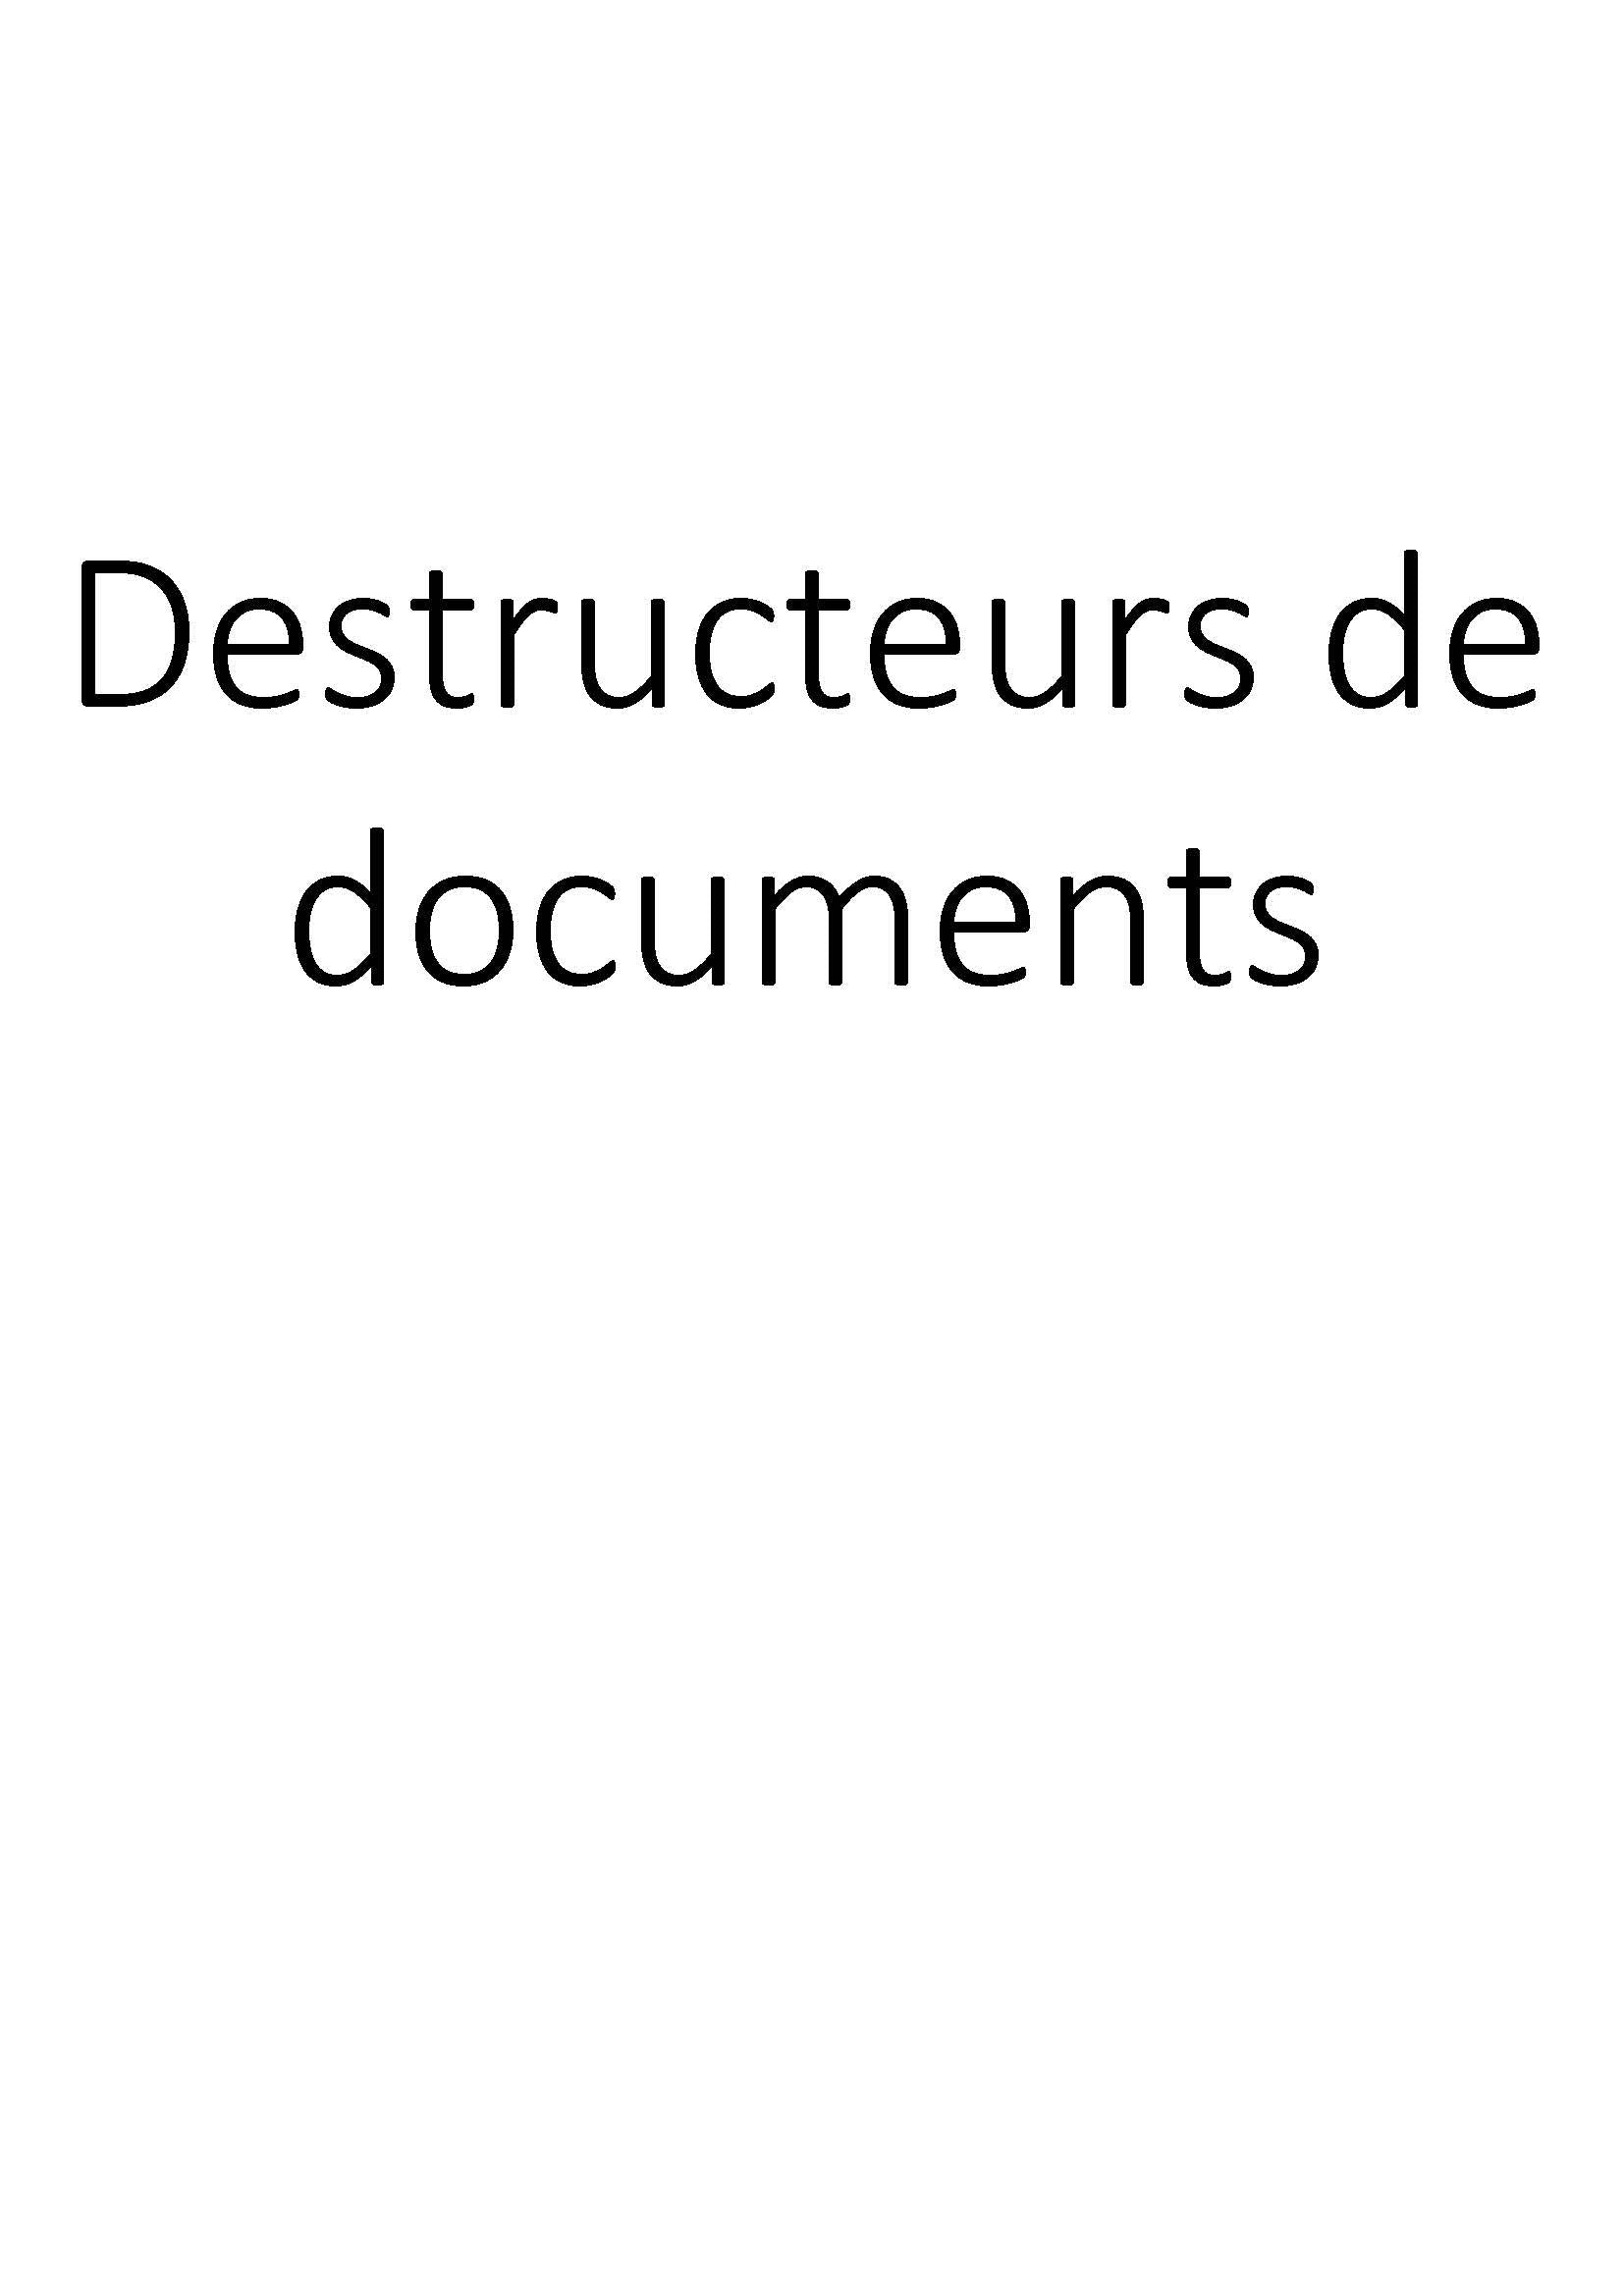 Destructeurs de documents clicktofournisseur.com